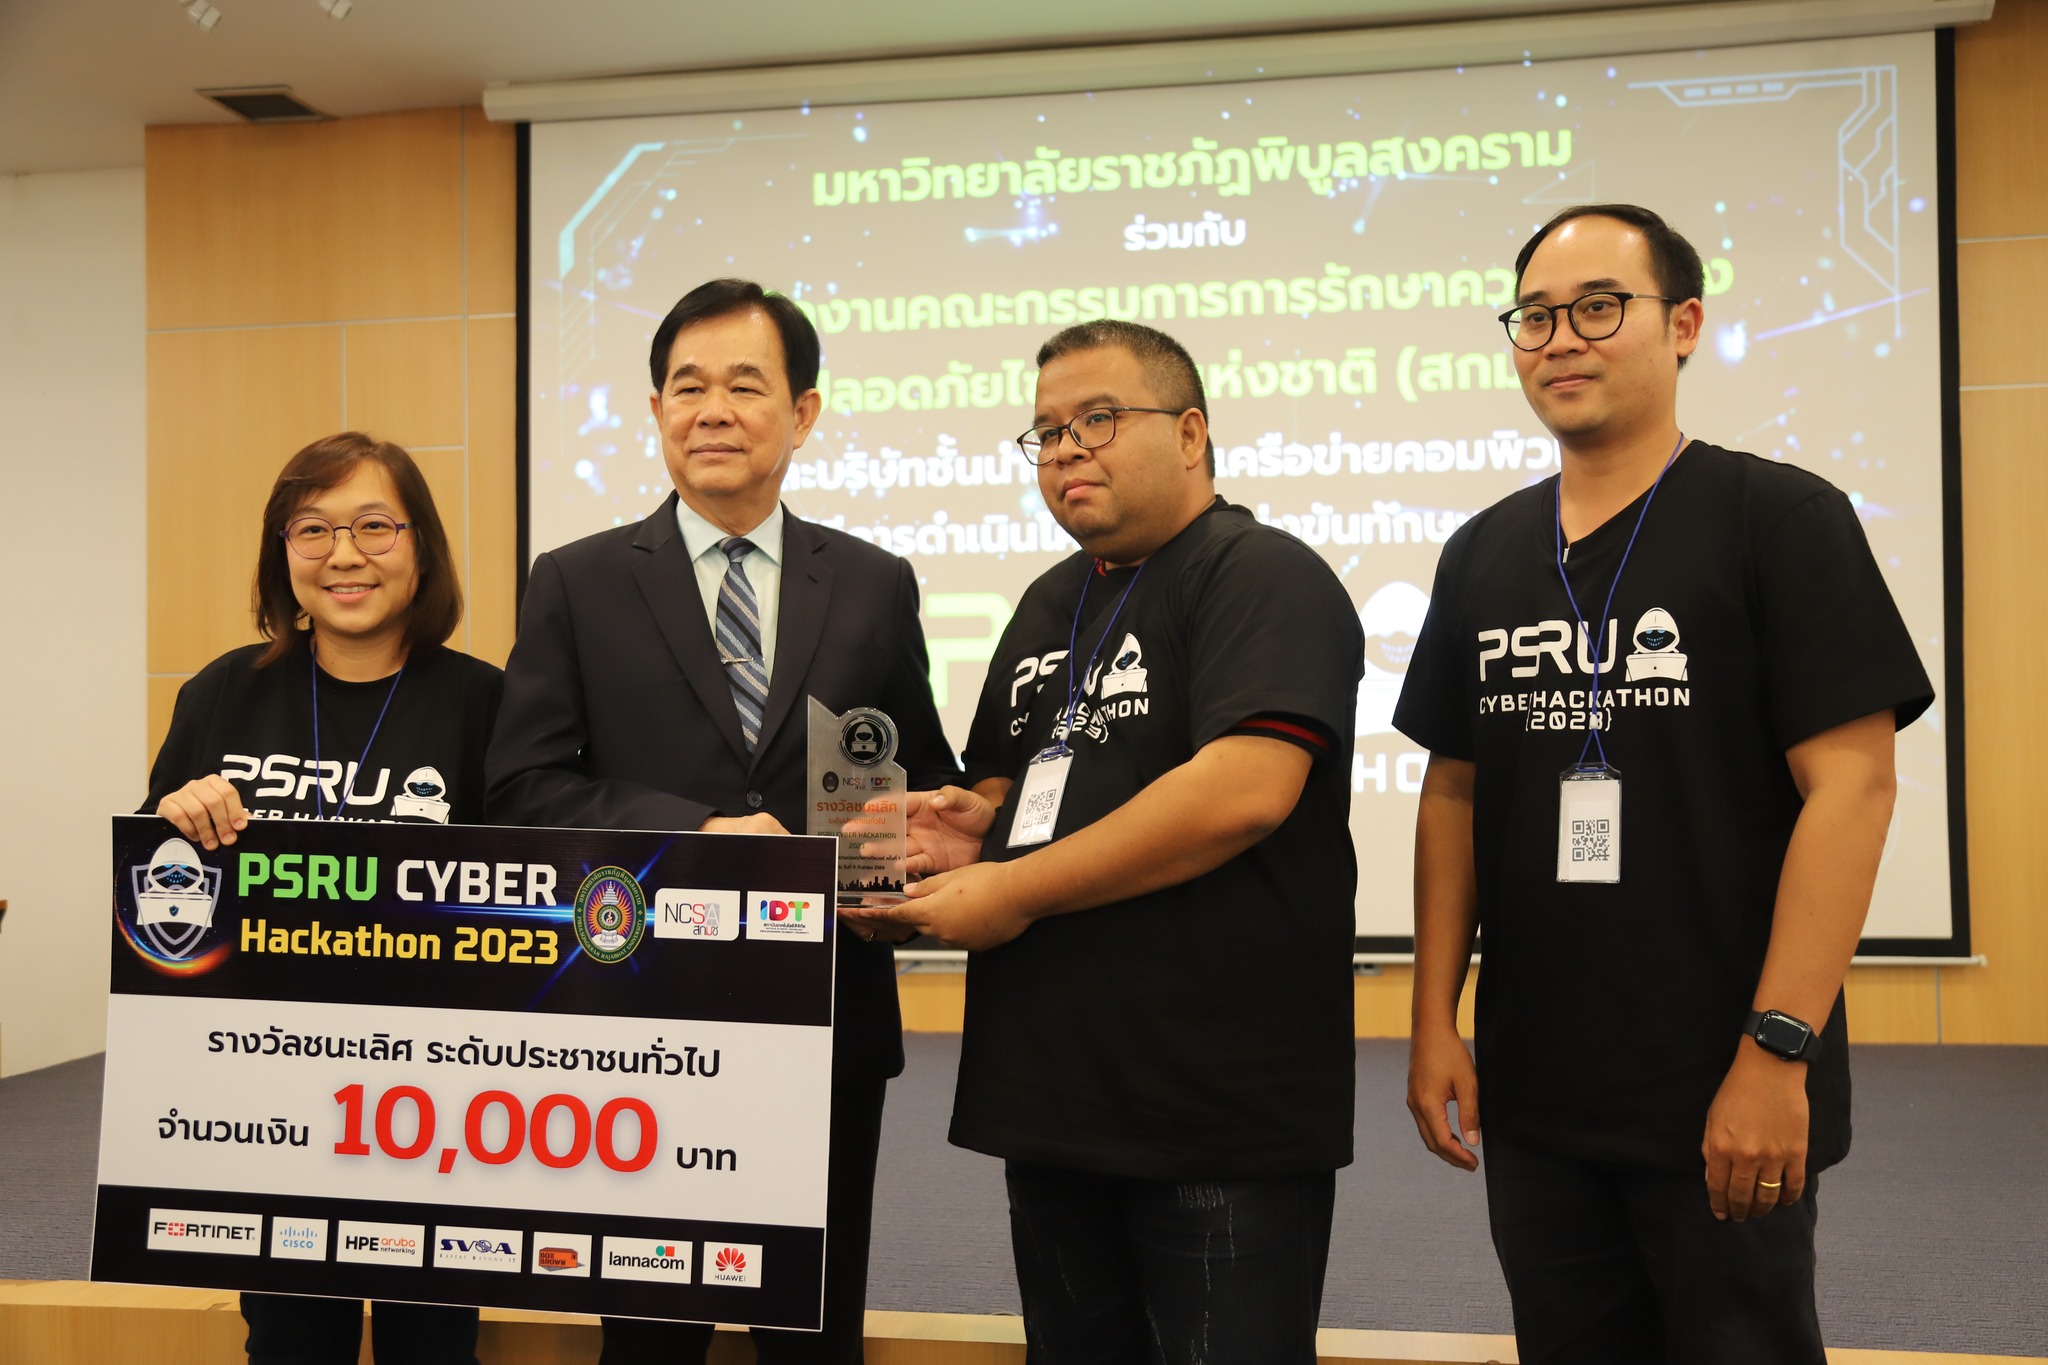 พิธีมอบรางวัล PSRU Cyber Hackathon 2023